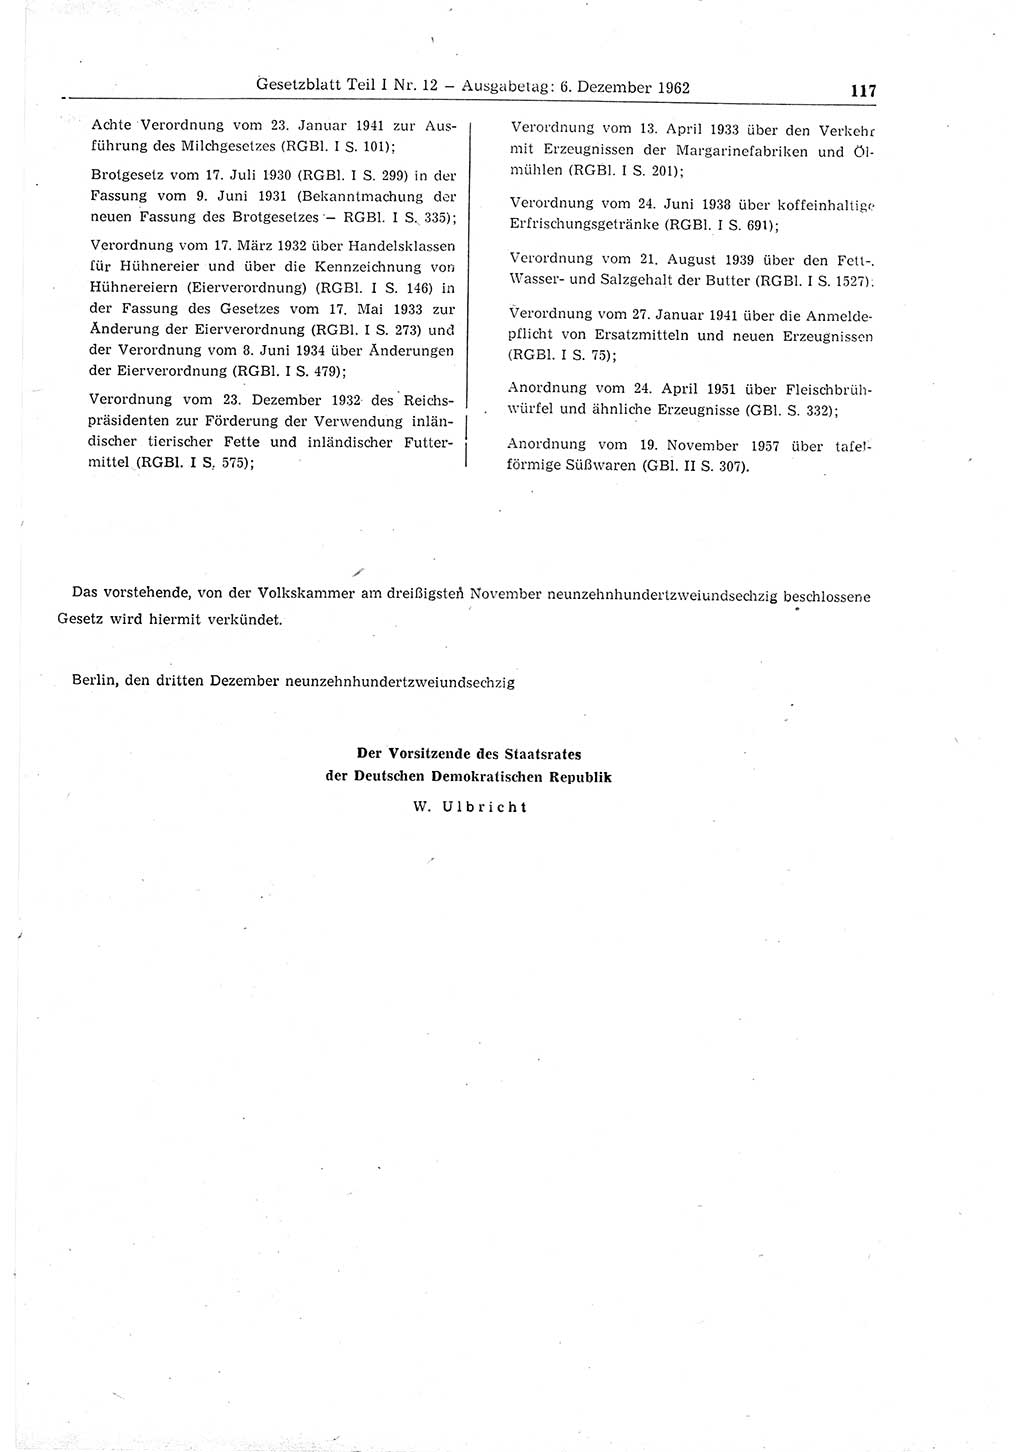 Gesetzblatt (GBl.) der Deutschen Demokratischen Republik (DDR) Teil Ⅰ 1962, Seite 117 (GBl. DDR Ⅰ 1962, S. 117)